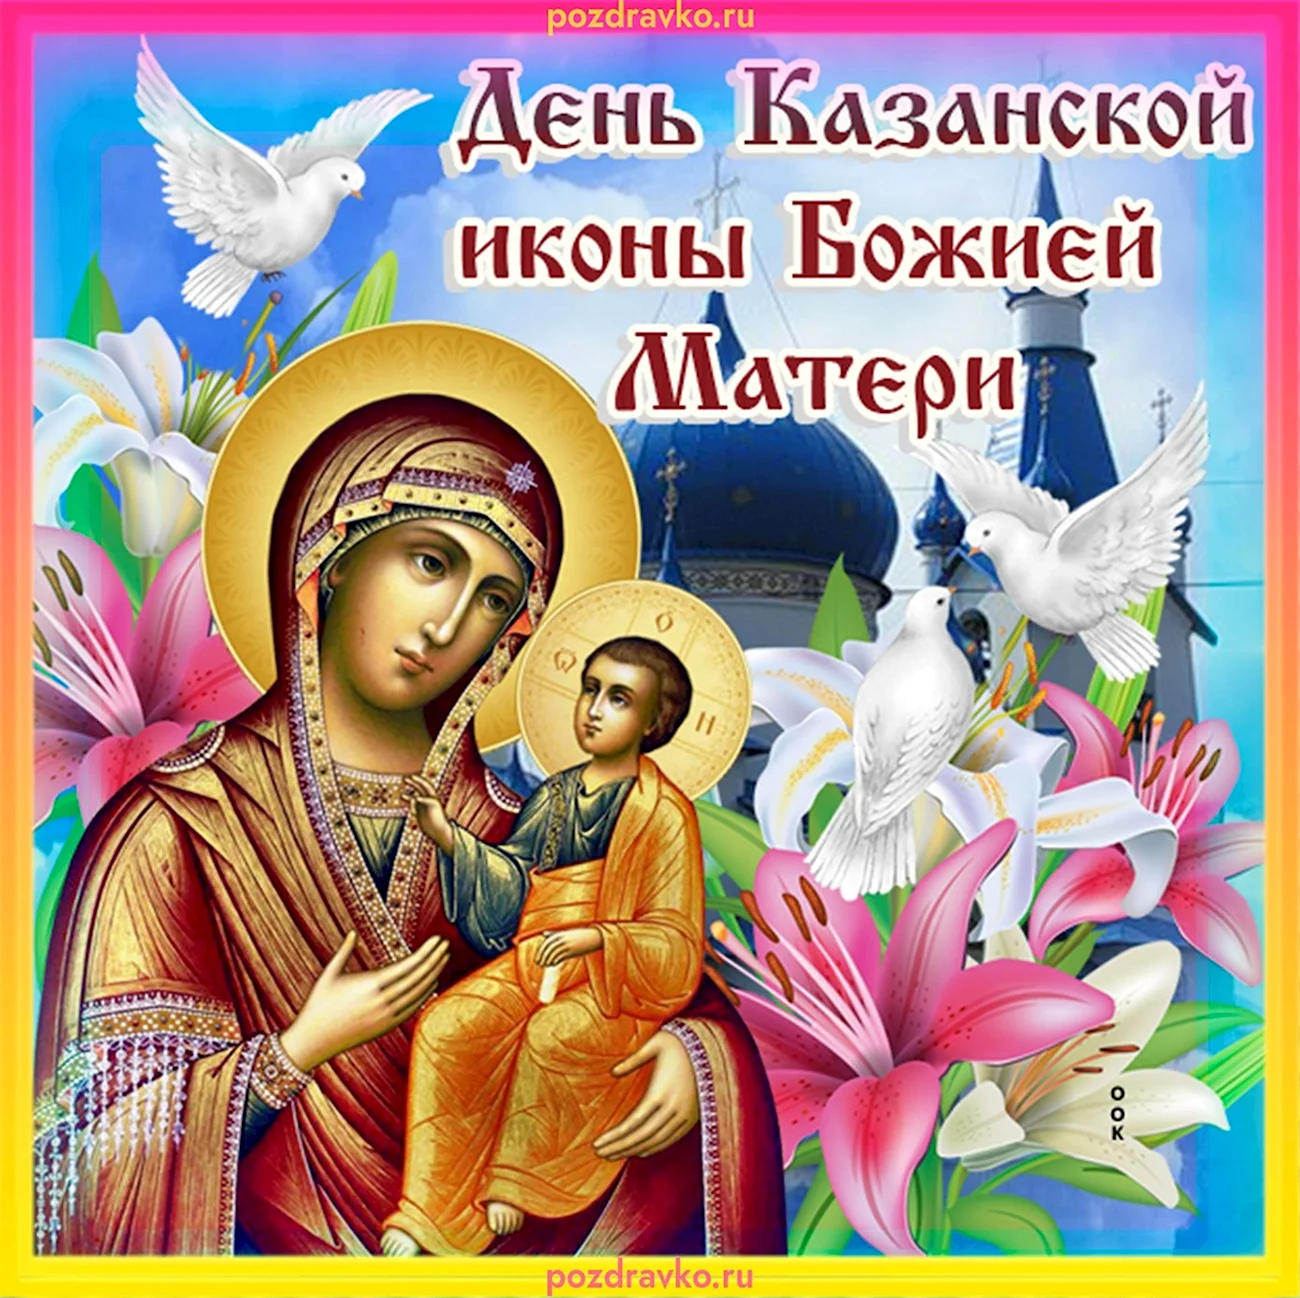 Иконы Казанской Божьей матери в 2021. Поздравление